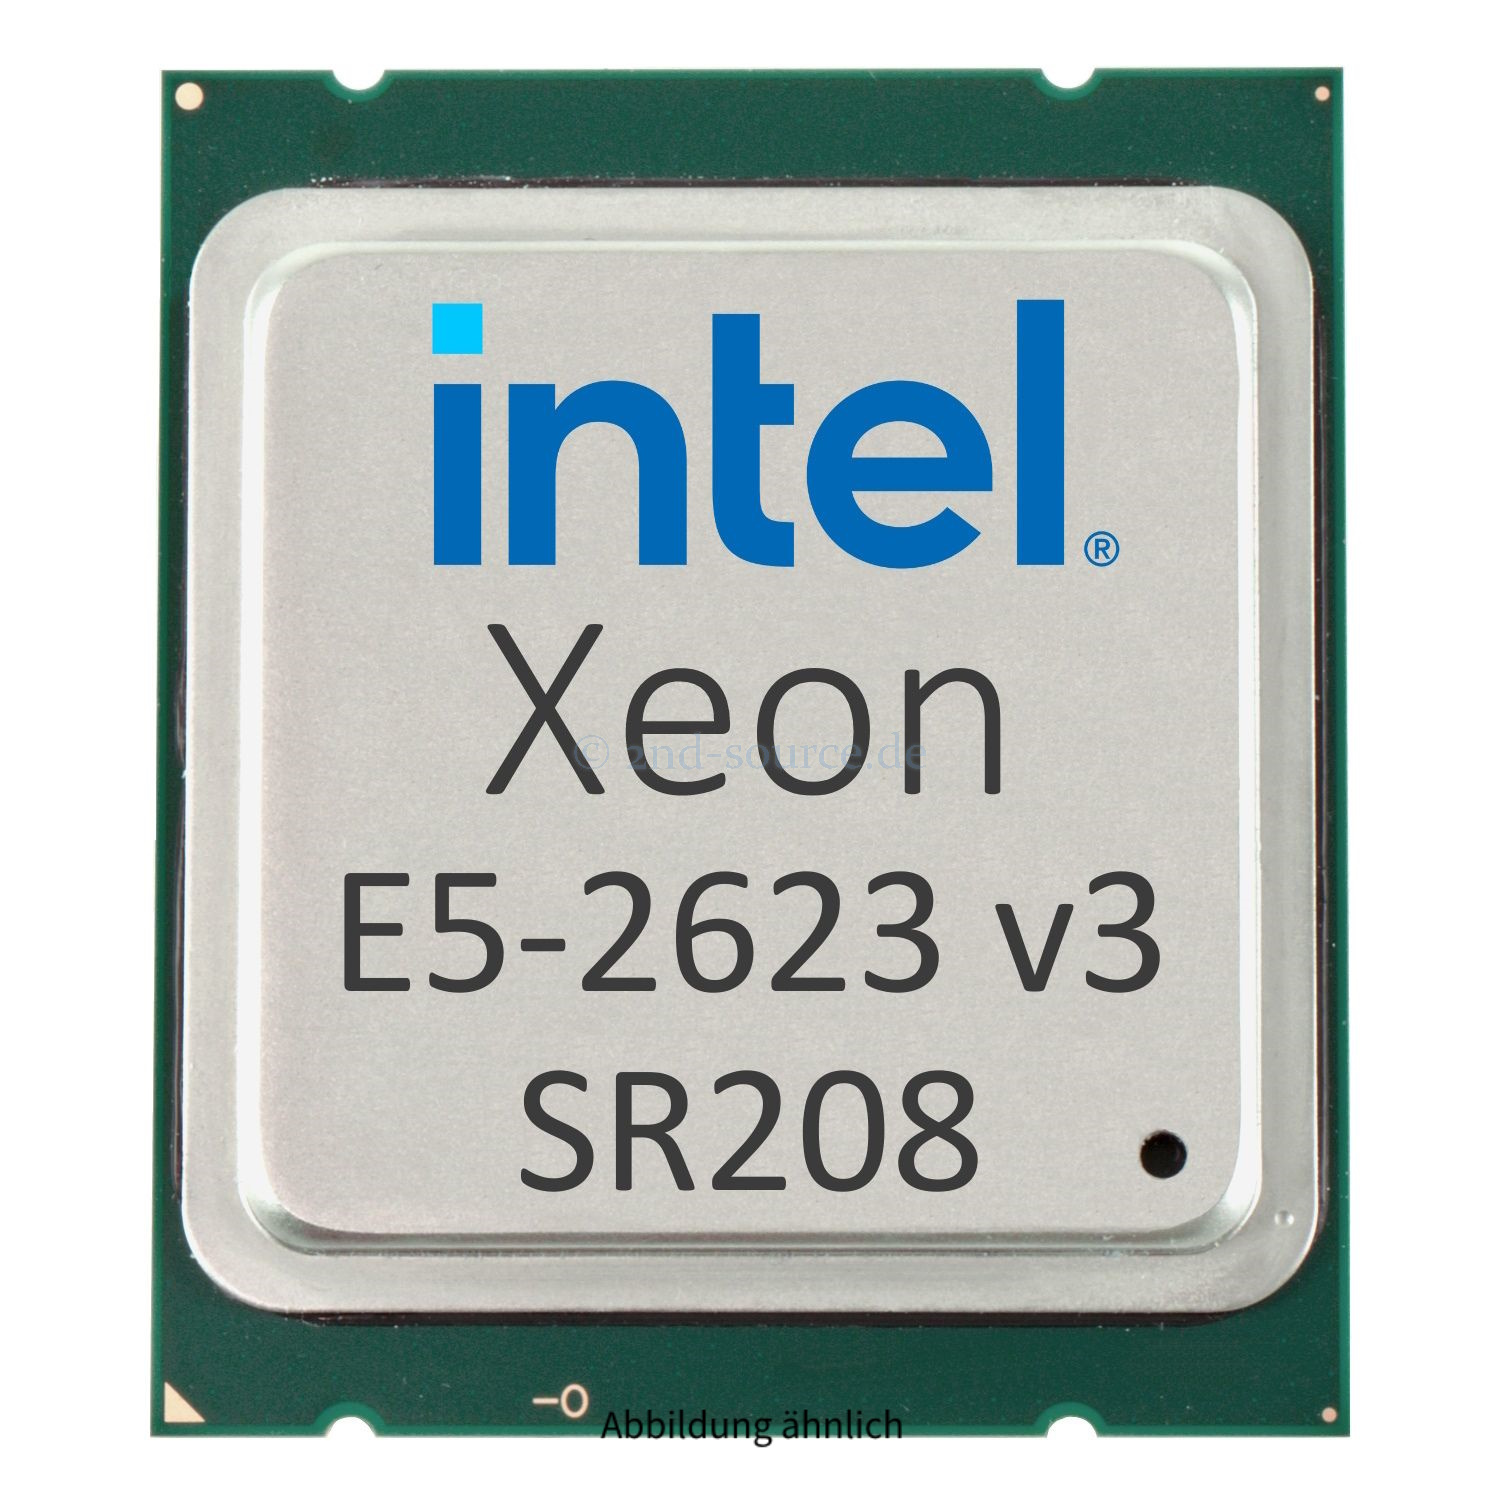 Intel Xeon E5-2623 v3 3.00 GHz 10MB 4-Core CPU 105W SR208 CM8064401832000